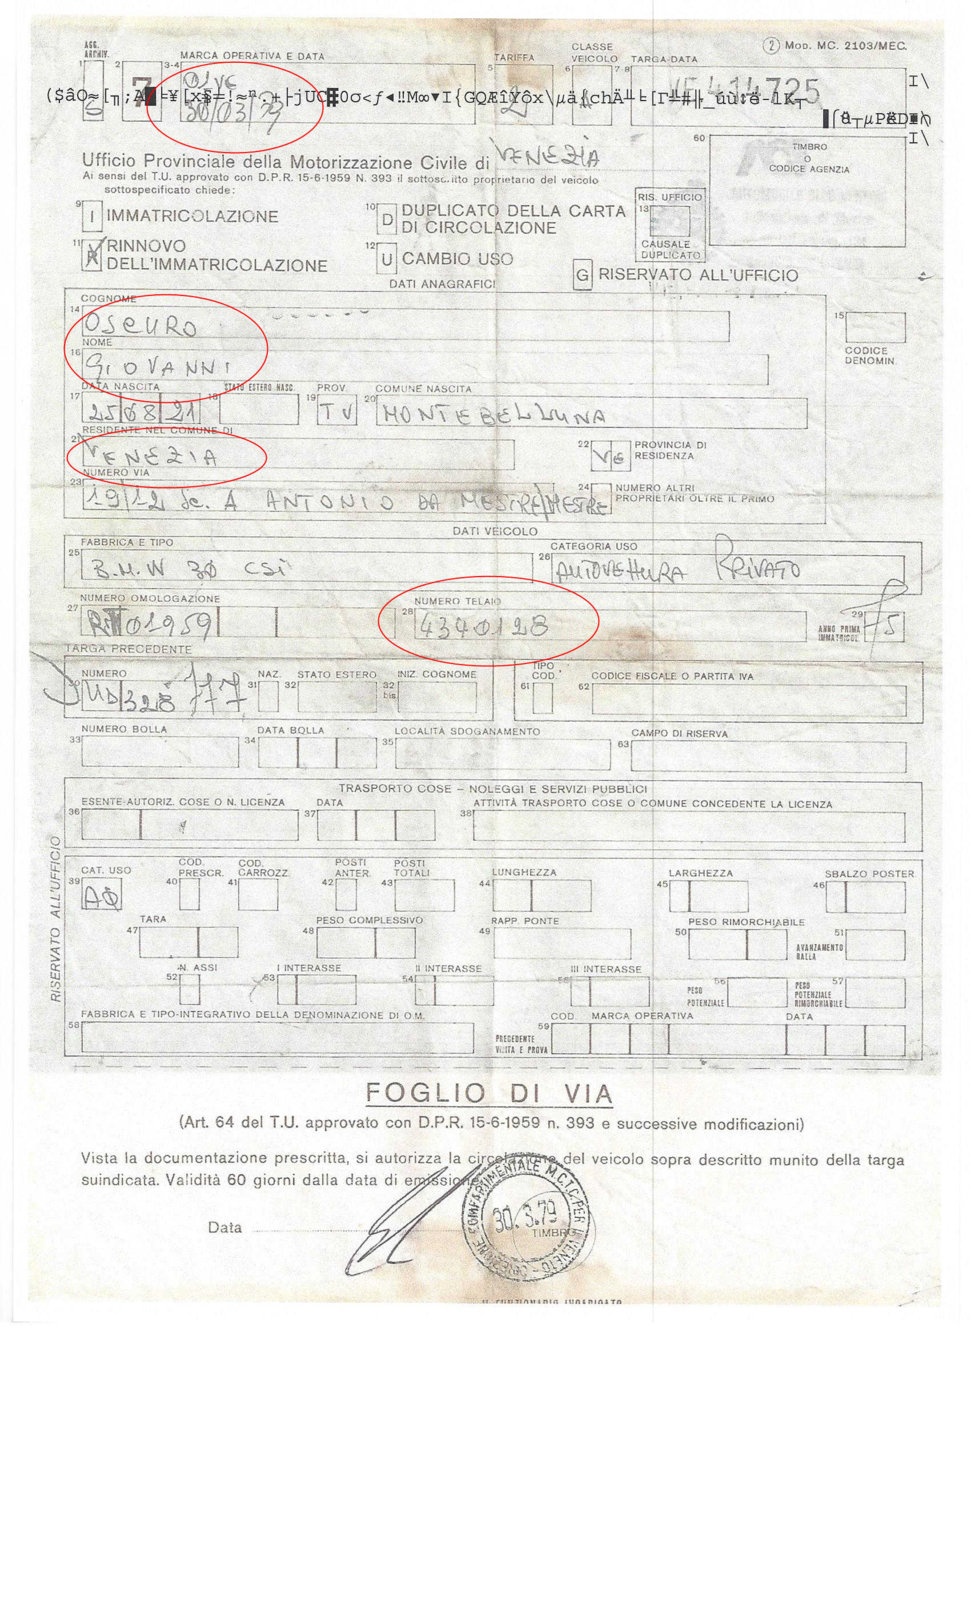 1979 Registration Renewal 30.03.79 UG - marked.jpg